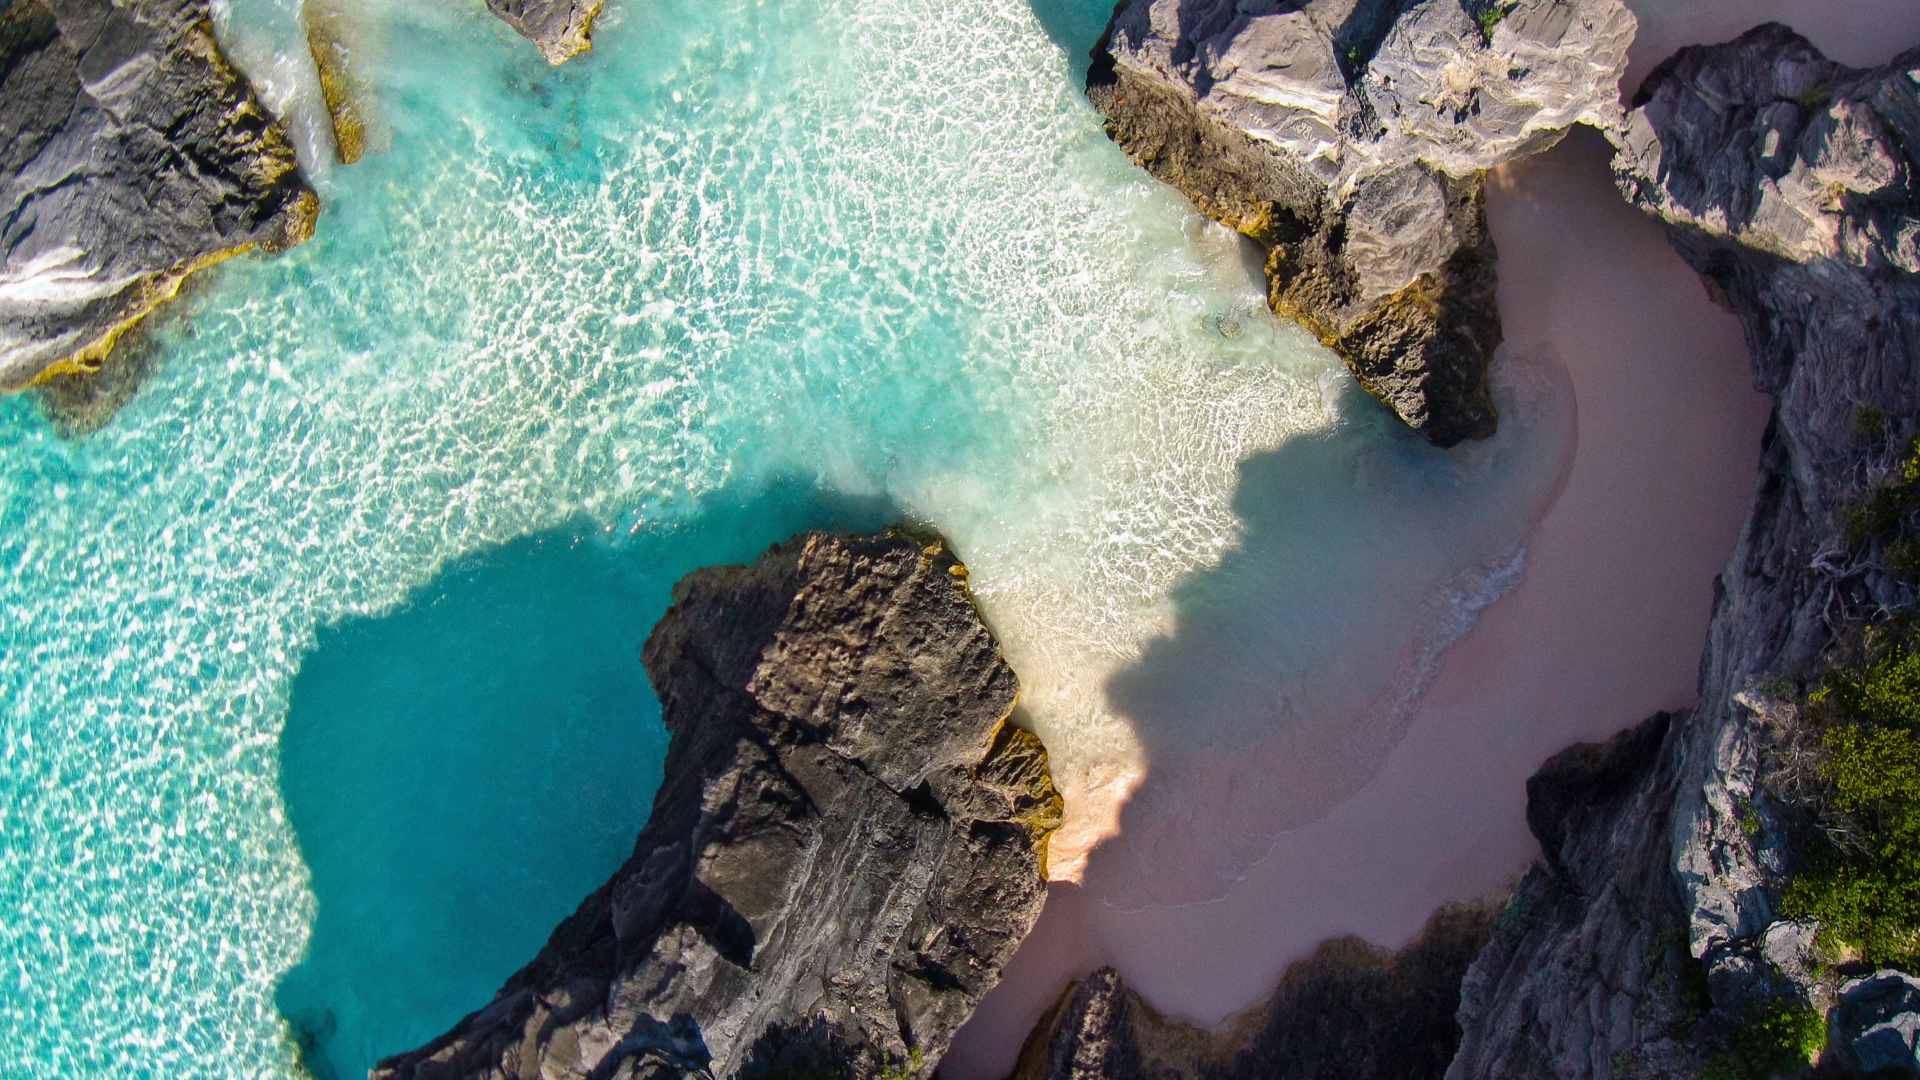 Playas de arena rosada es uno de loslujos de las Bermudas